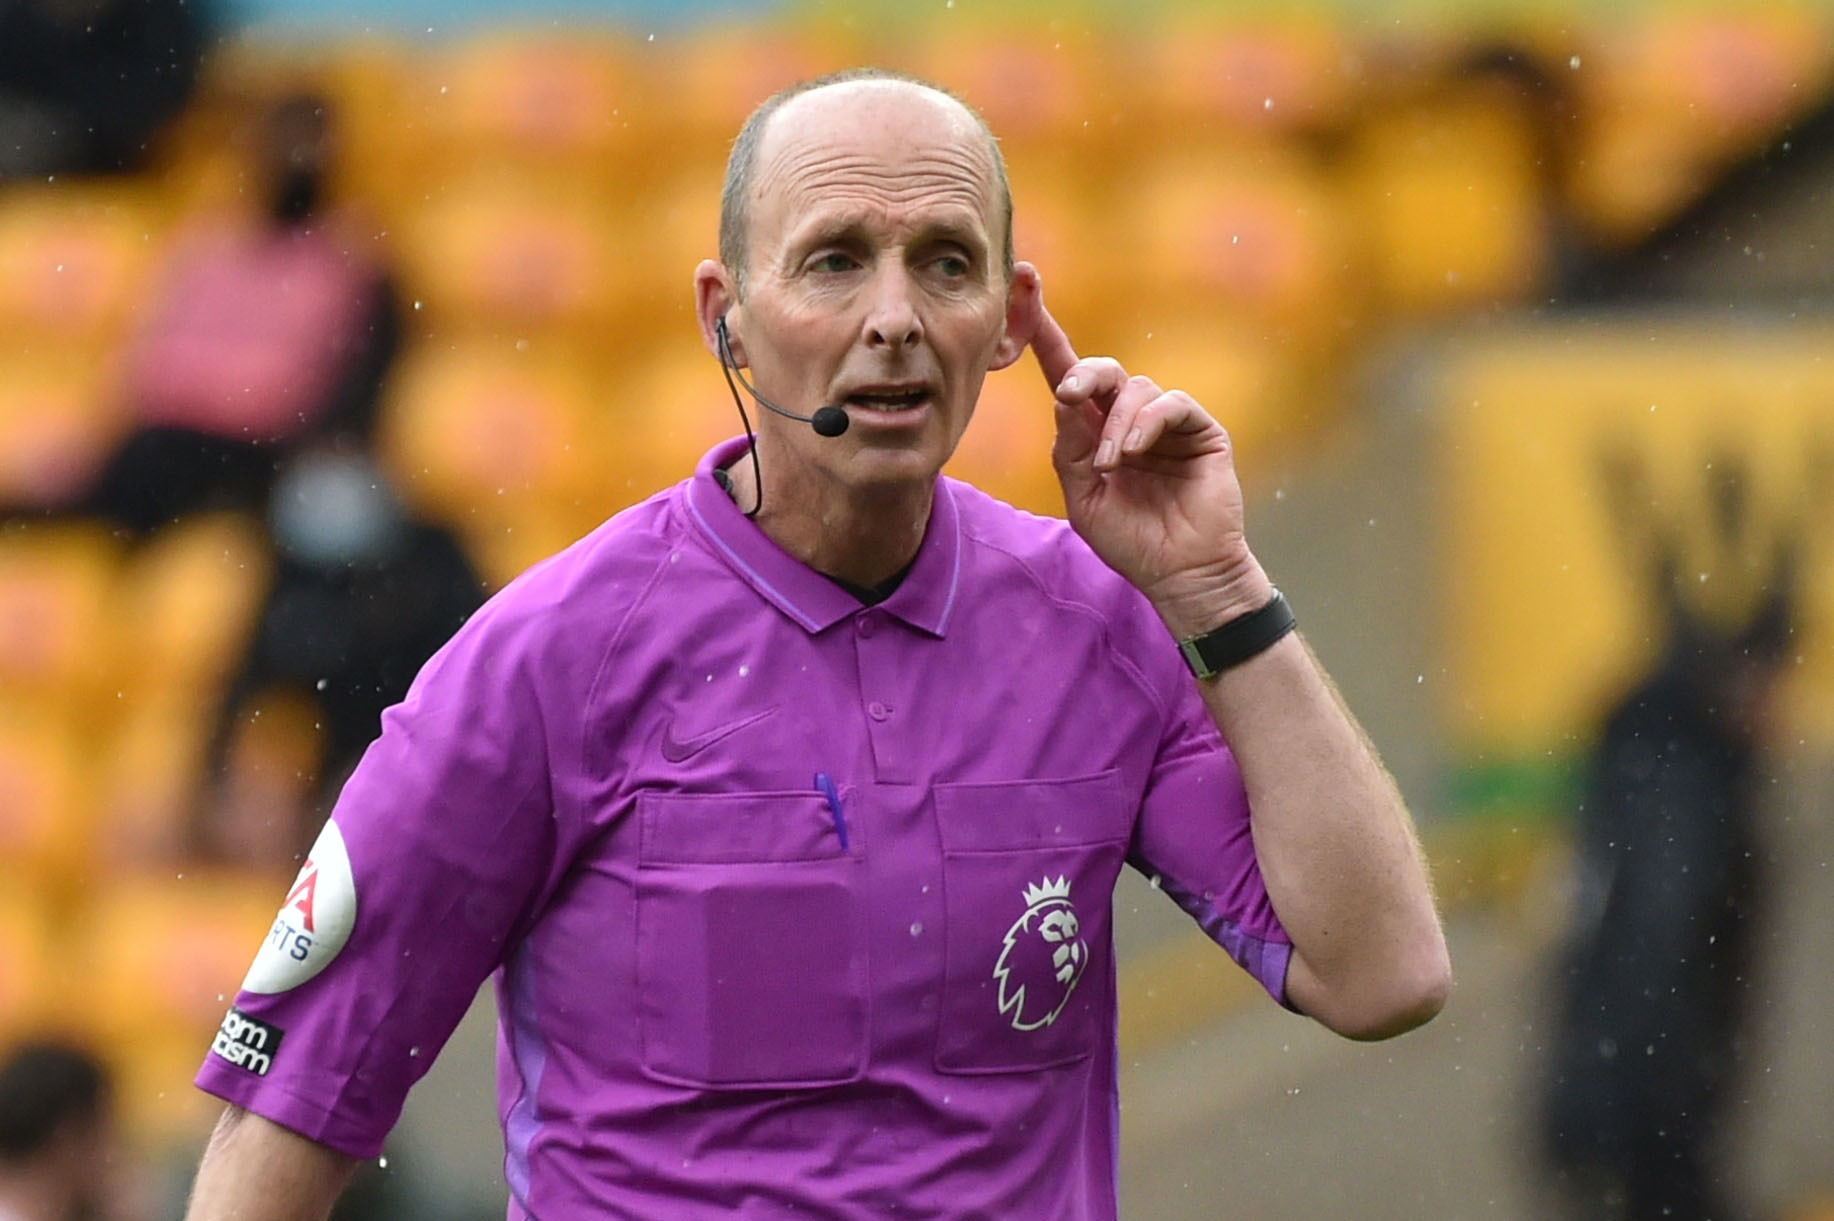 Mike Dean to referee Watford versus Aston Villa